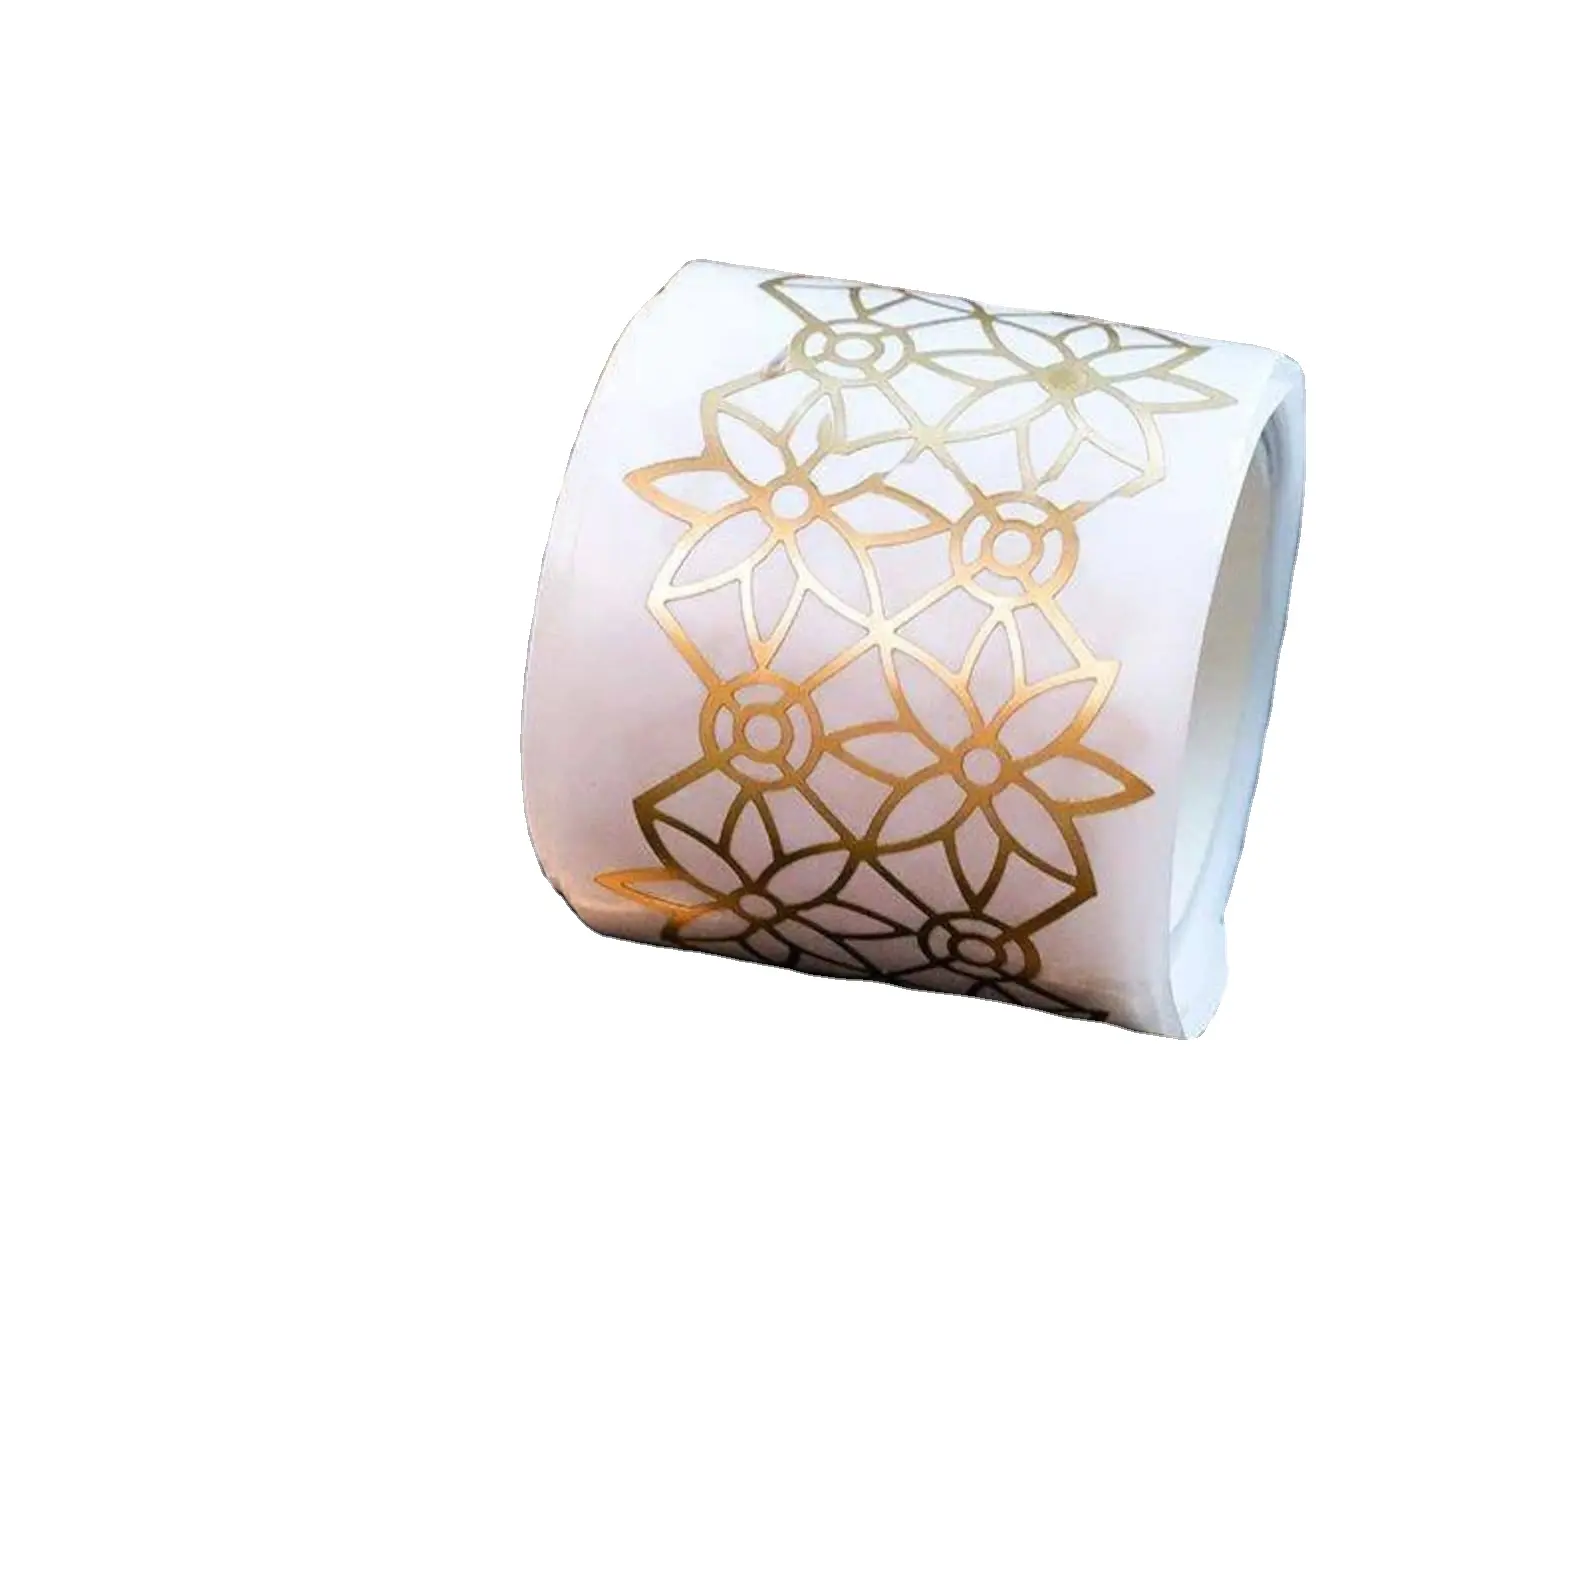 Adhesivo OEM impreso personalizado forma Irregular beso troquelado decoración Anime Vintage papel crepé cinta adhesiva Washi